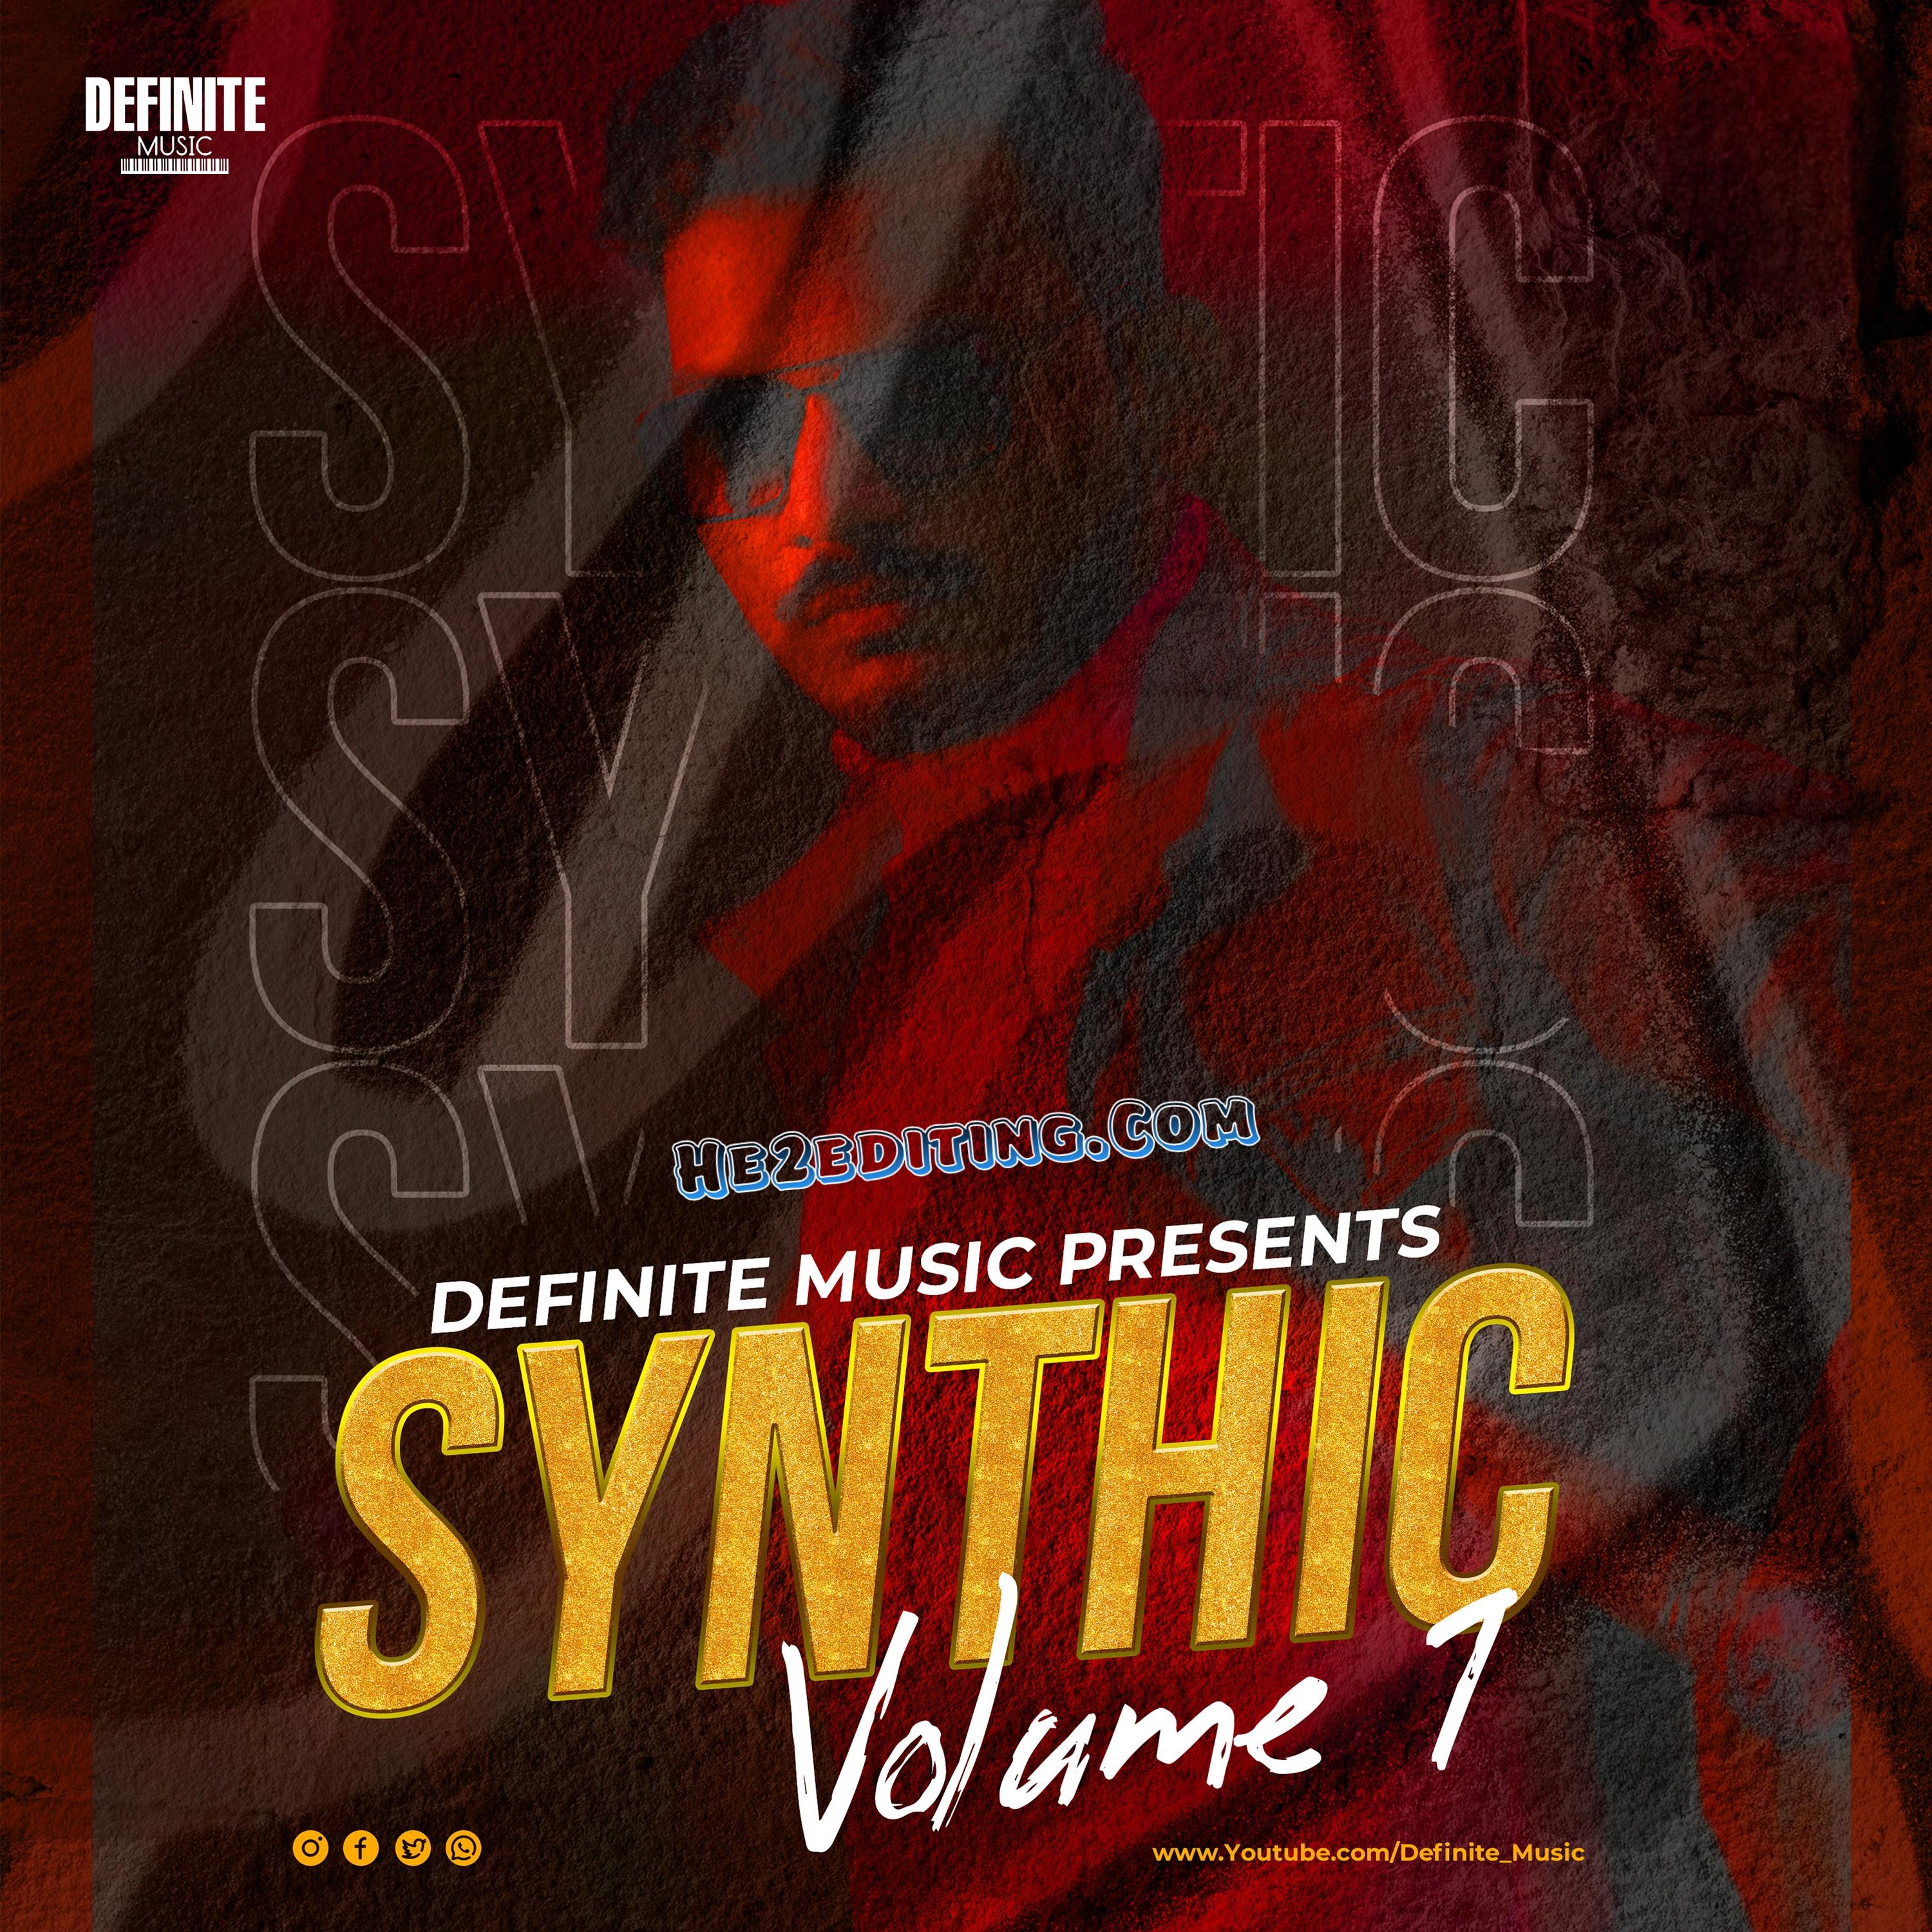 Synthic Volume 1 (The Album) - Definite Music